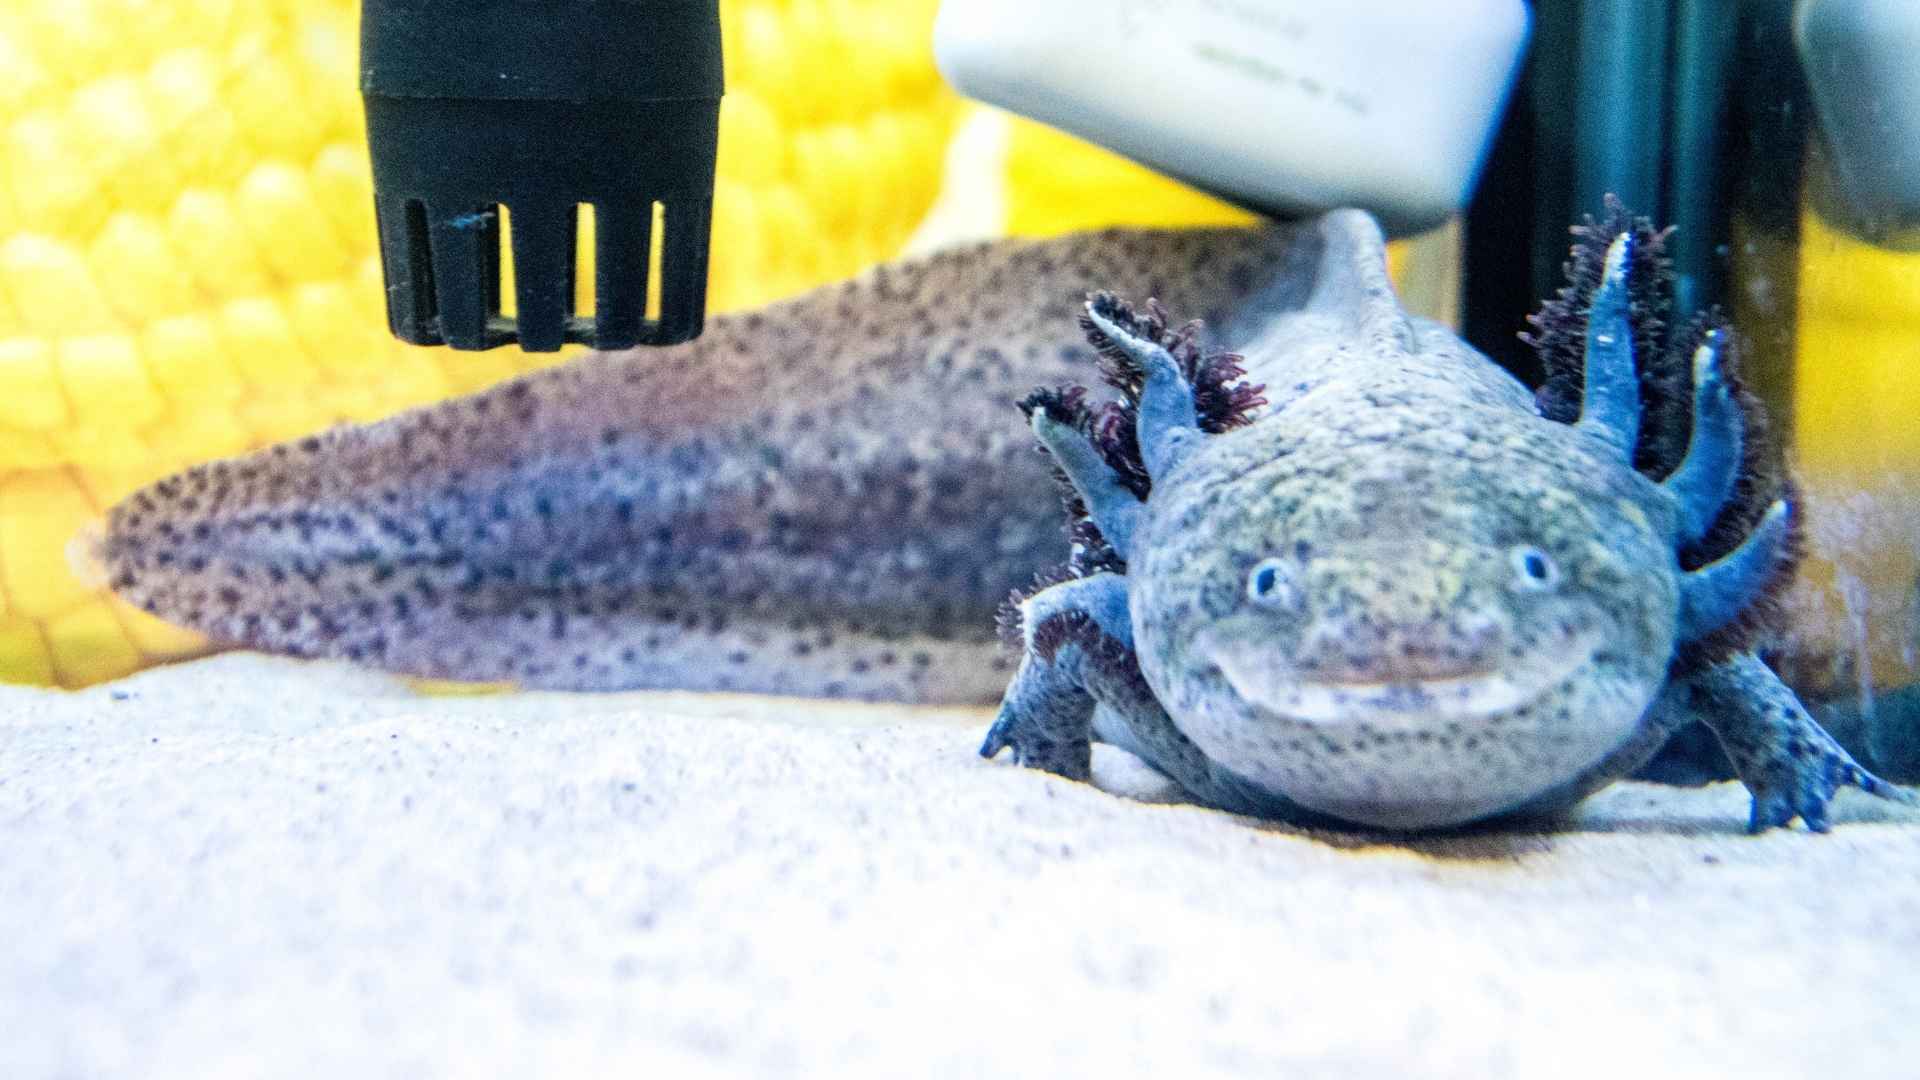 Axolotl feeding tutorial #33 